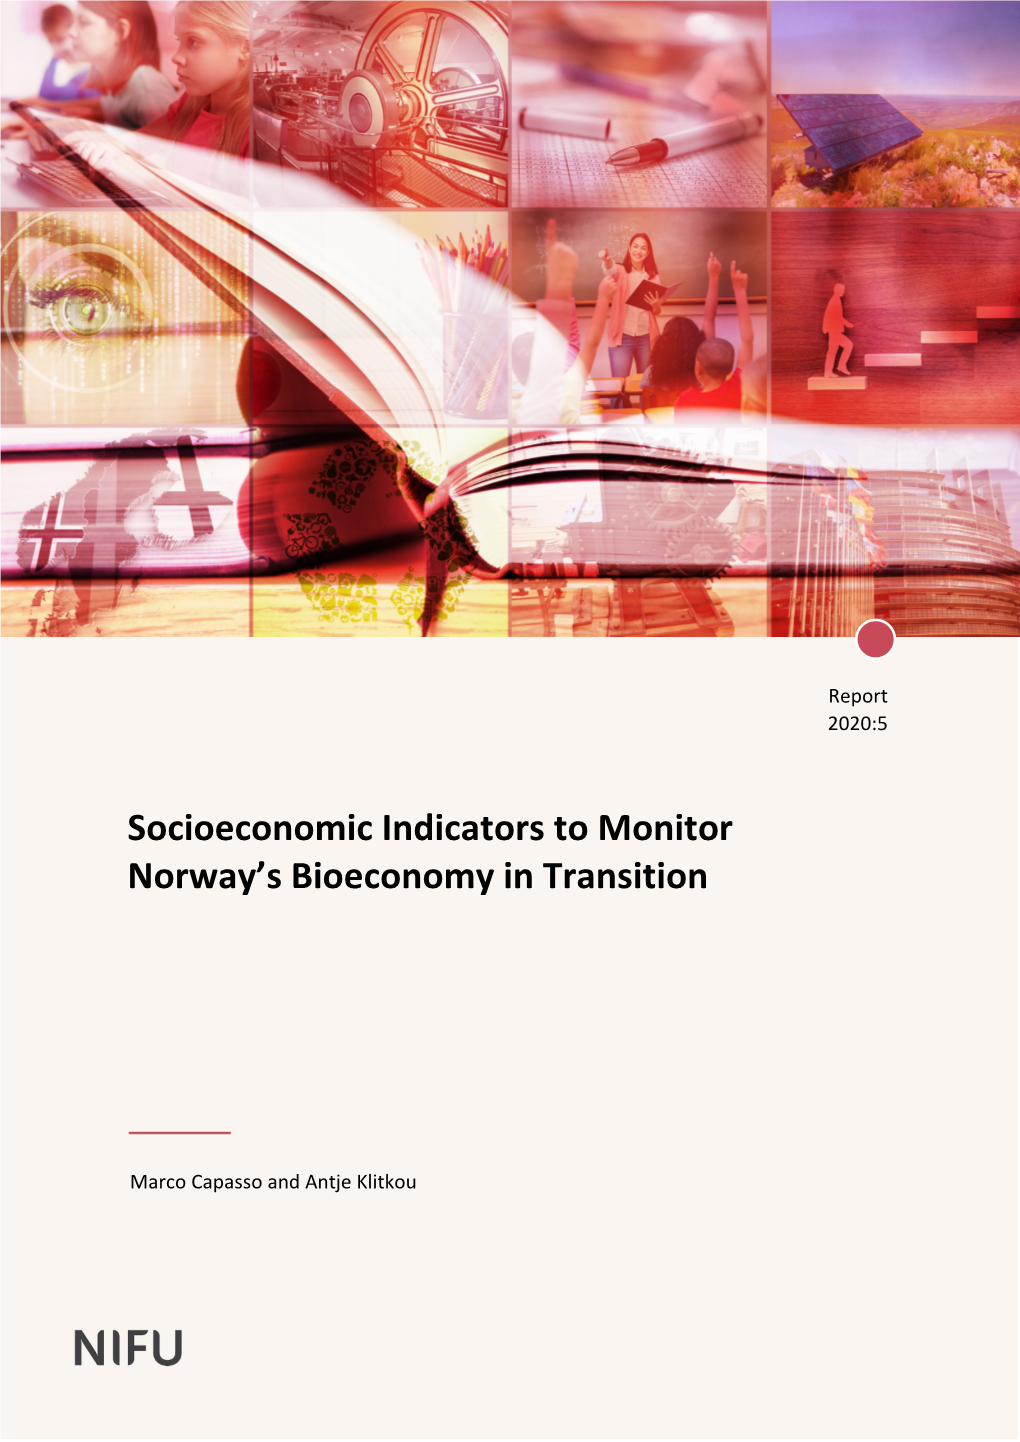 Socioeconomic Indicators to Monitor Norway's Bioeconomy in Transition